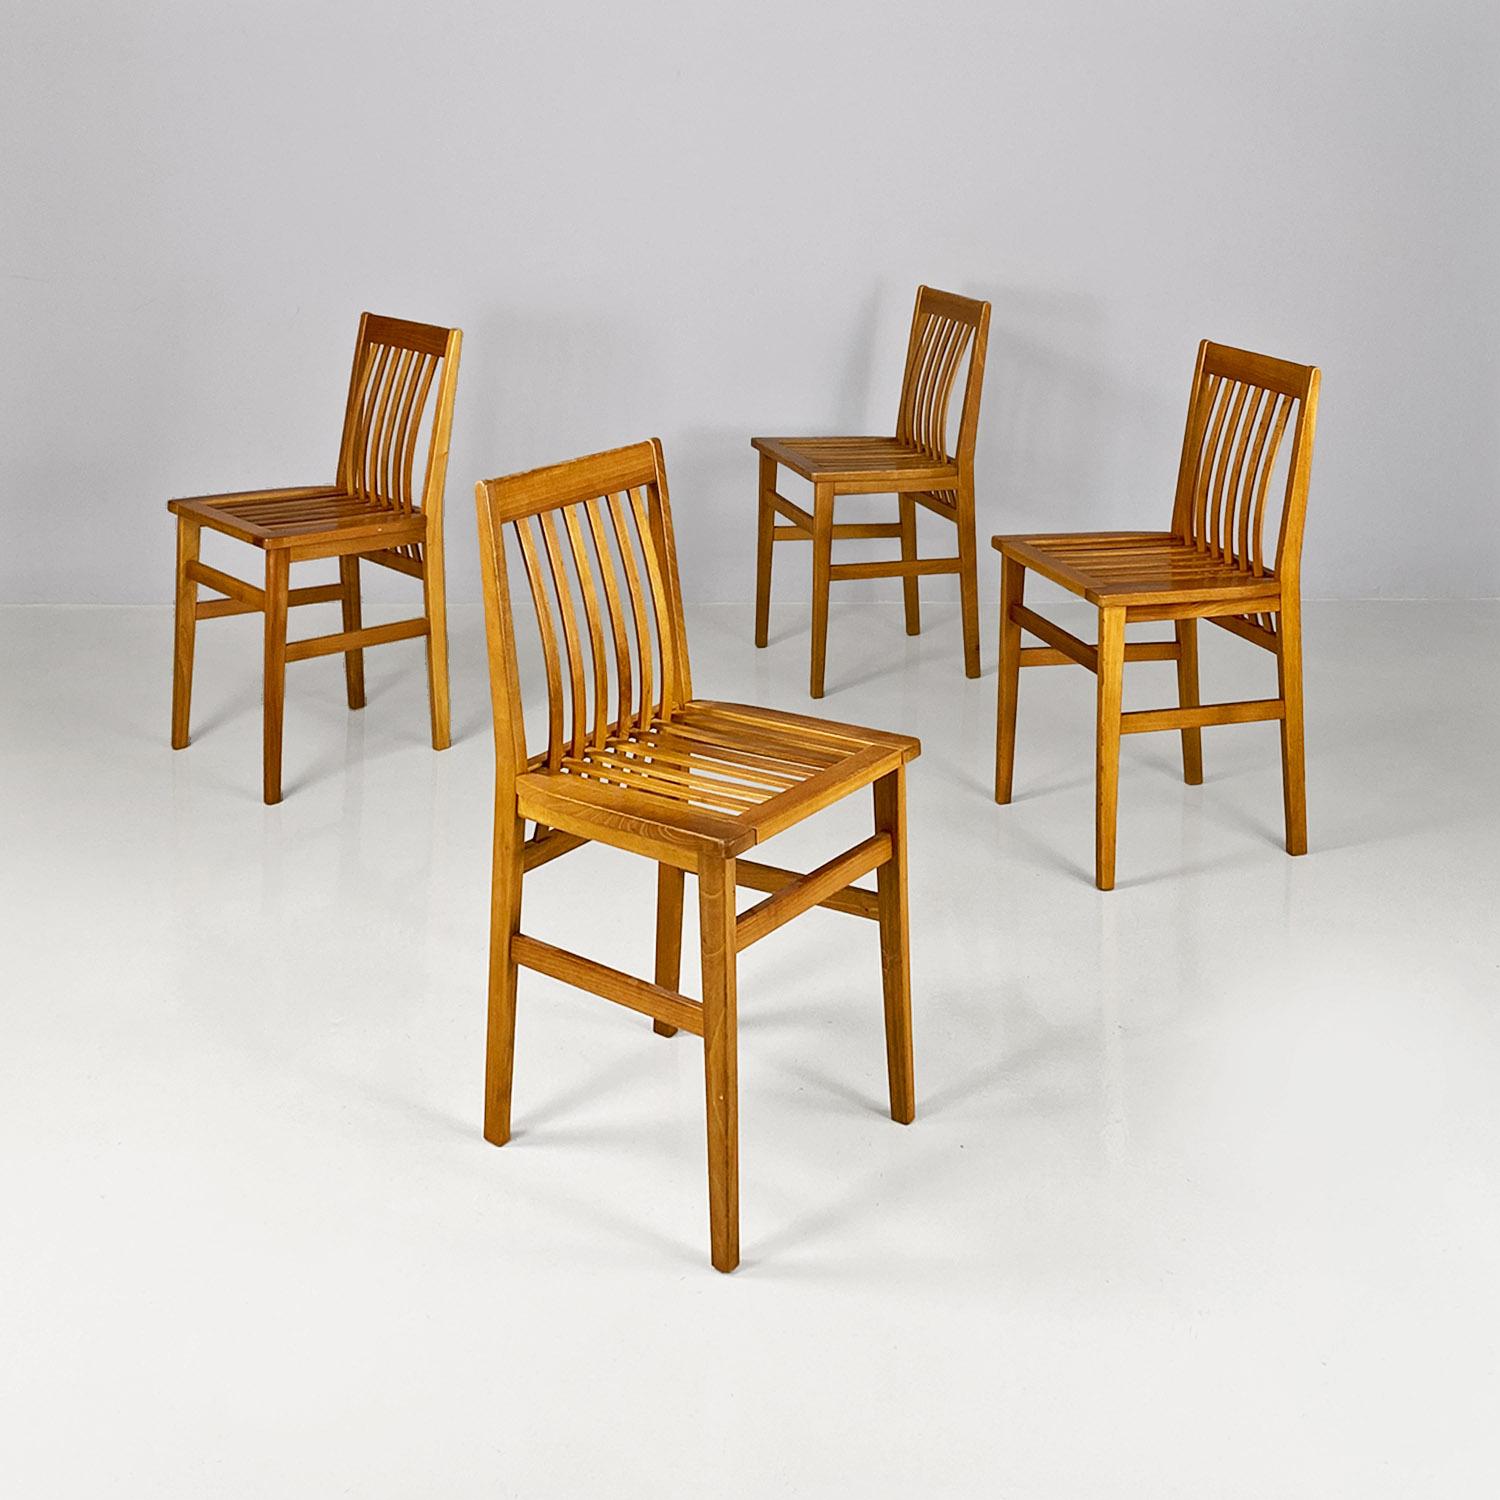 Ensemble moderne italien de quatre chaises Milano en bois, par Aldo Rossi pour Molteni, 1987.
Lot de quatre chaises modèle Milano, avec une structure en bois léger de forme carrée, avec un dossier et une assise en lattes parallèles incurvées. Peu